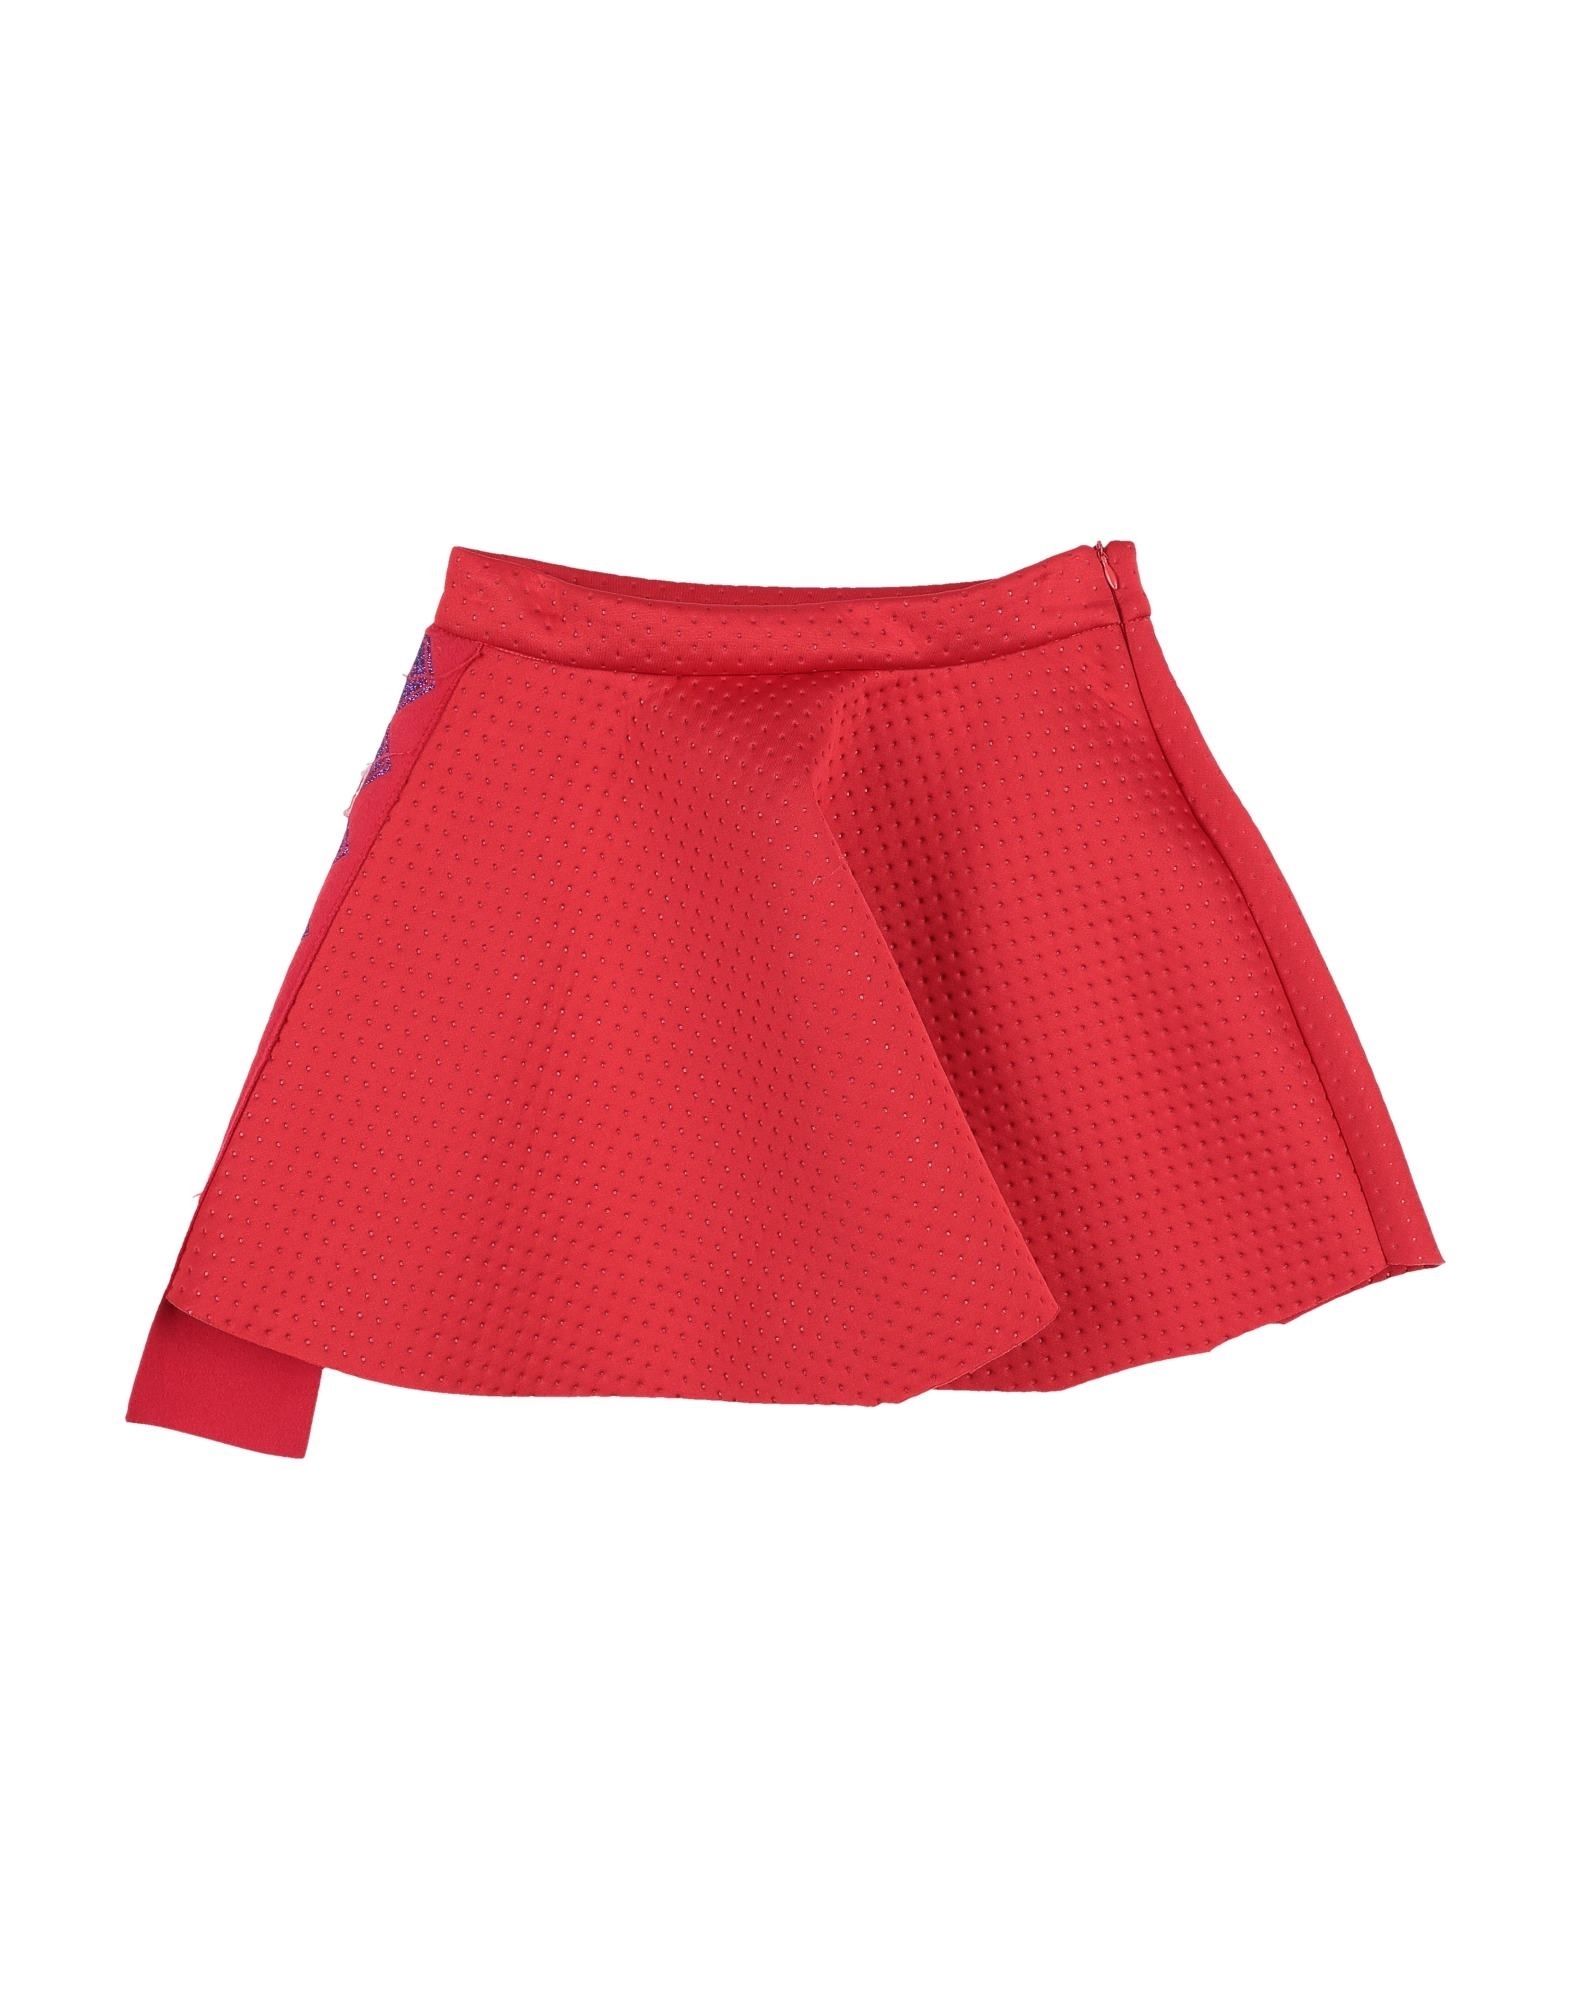 Victoria & Stella Kids' Skirts In Red